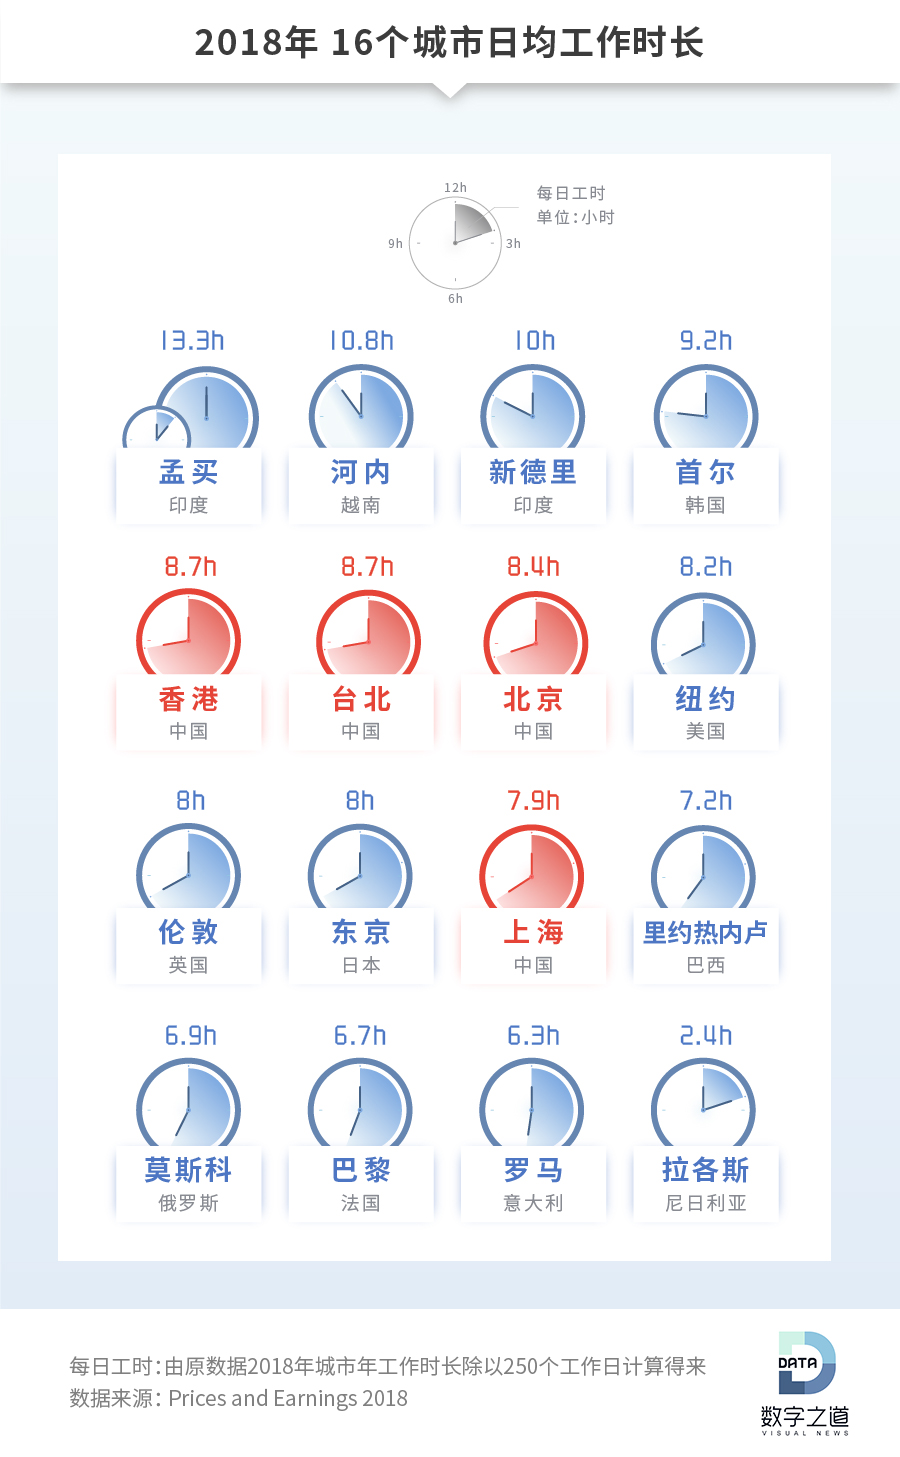 77个城市 谁是地表最强劳模? 中国仅1成人敢“硬气休假”